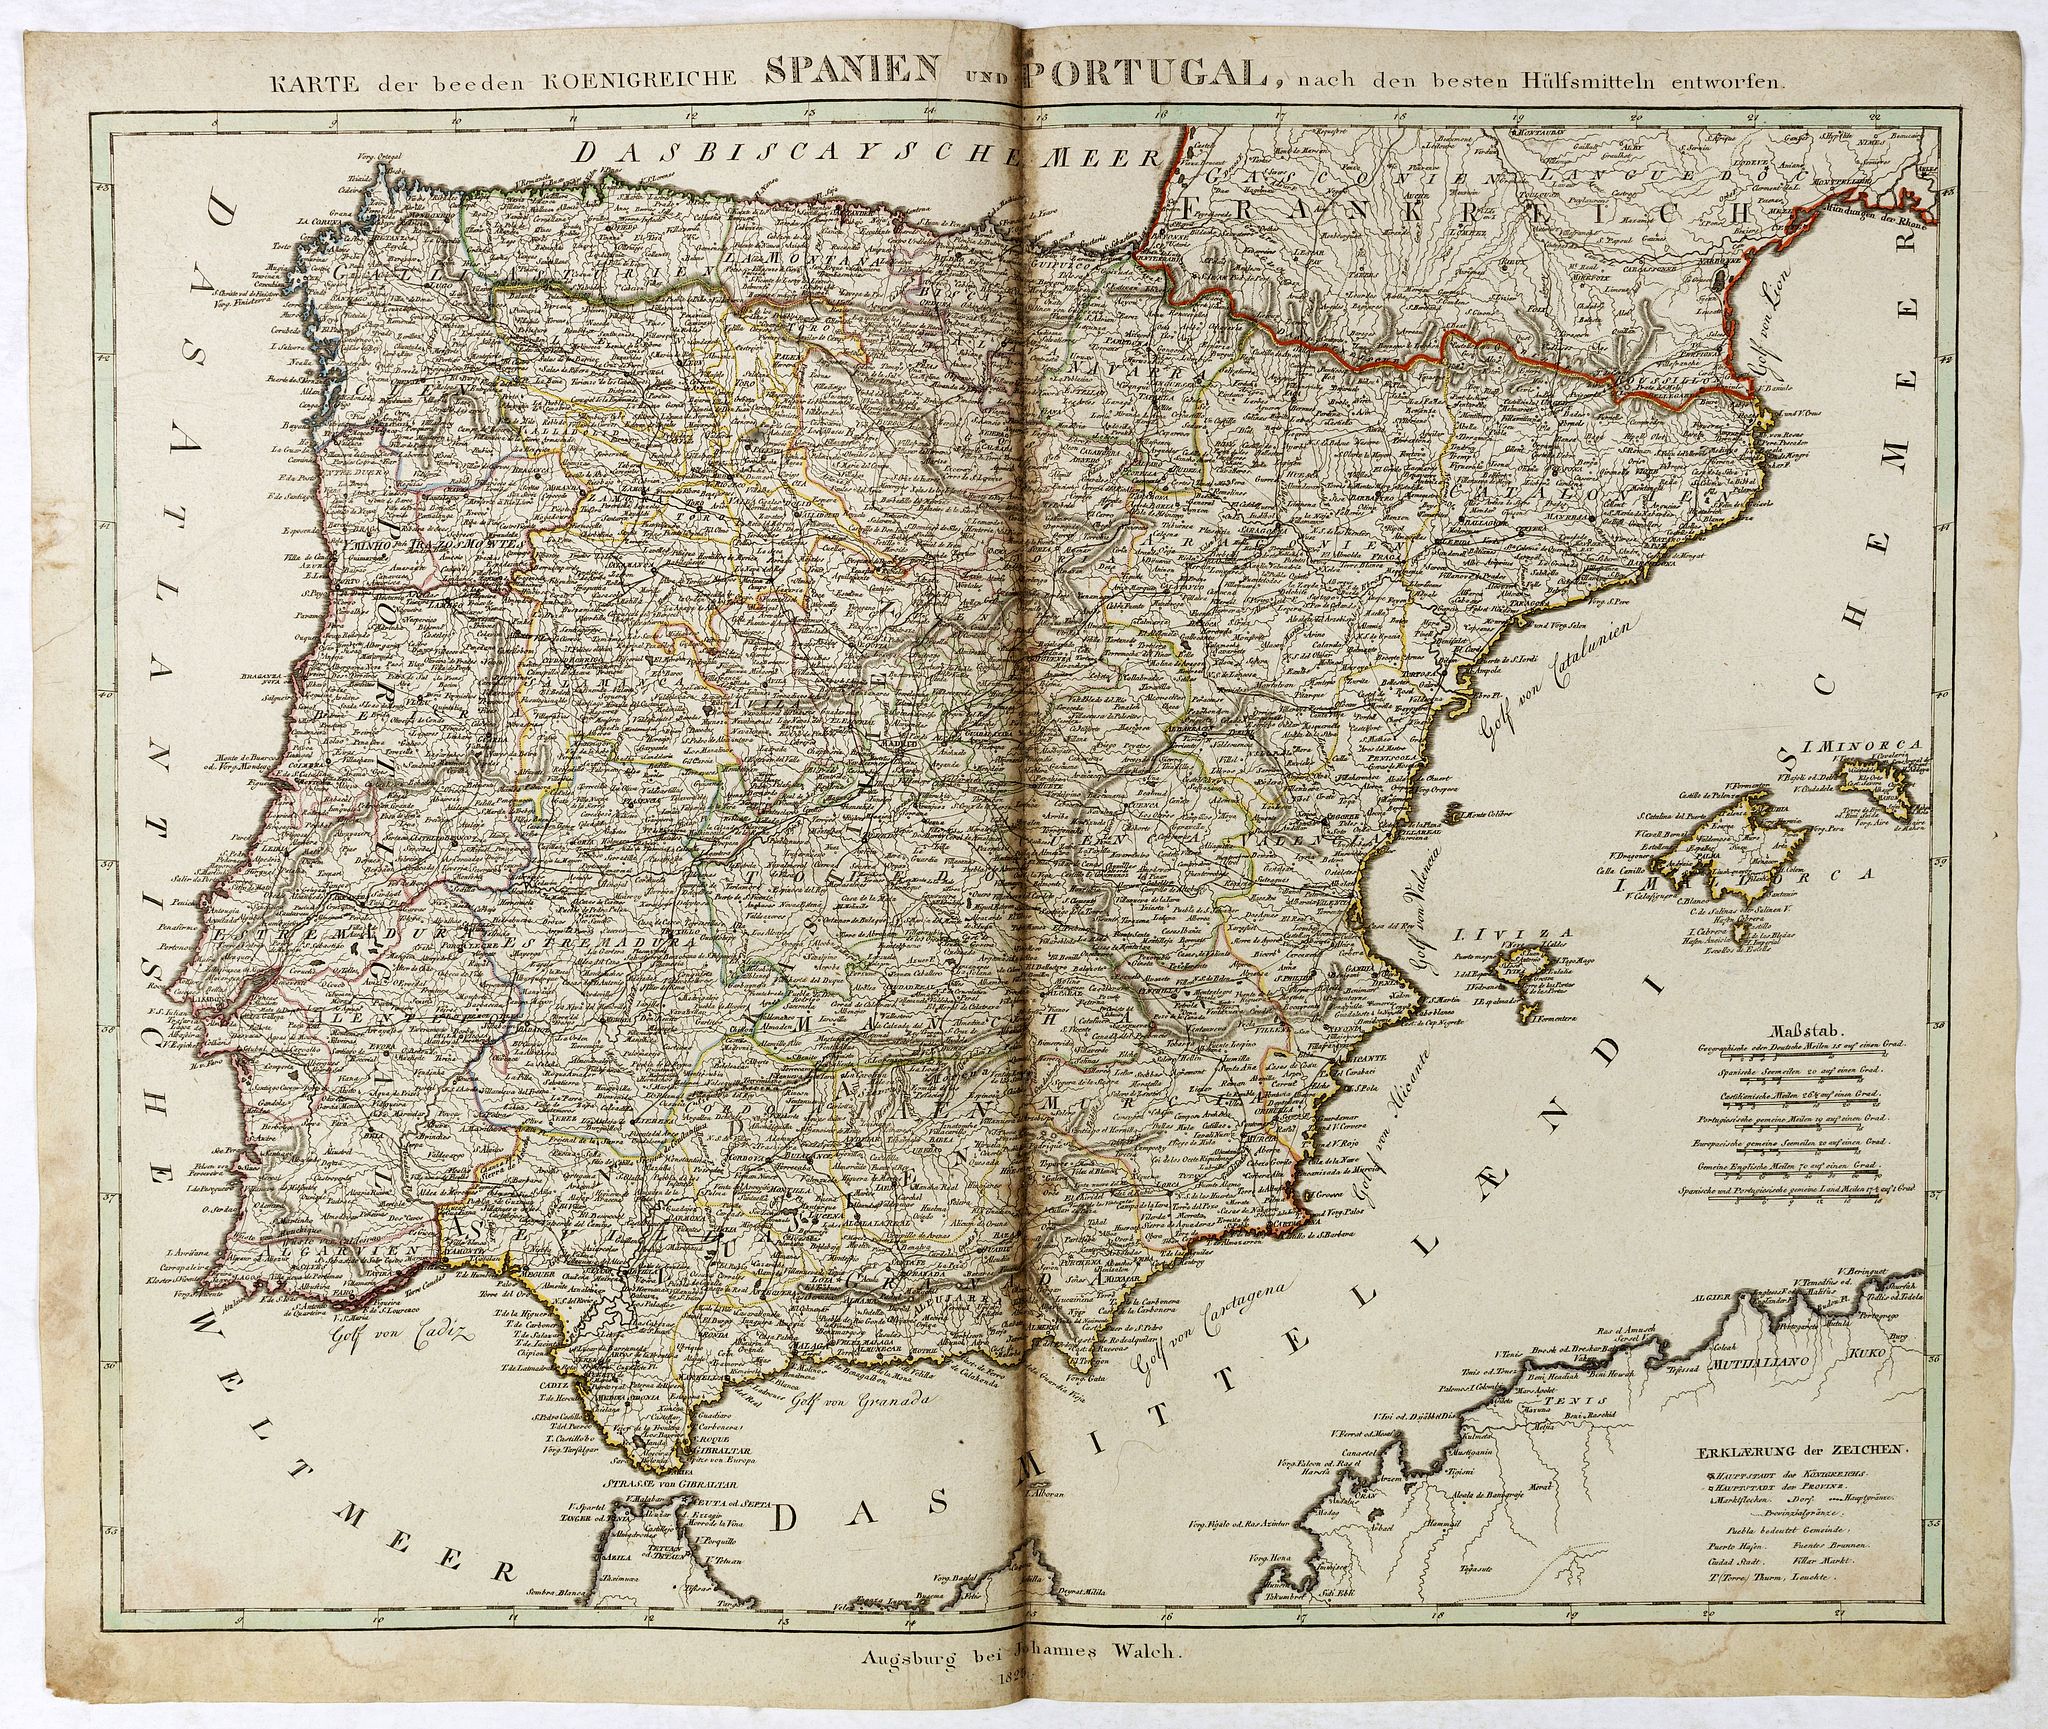 Karte der beeden koenidreiche Spanien und Portugal